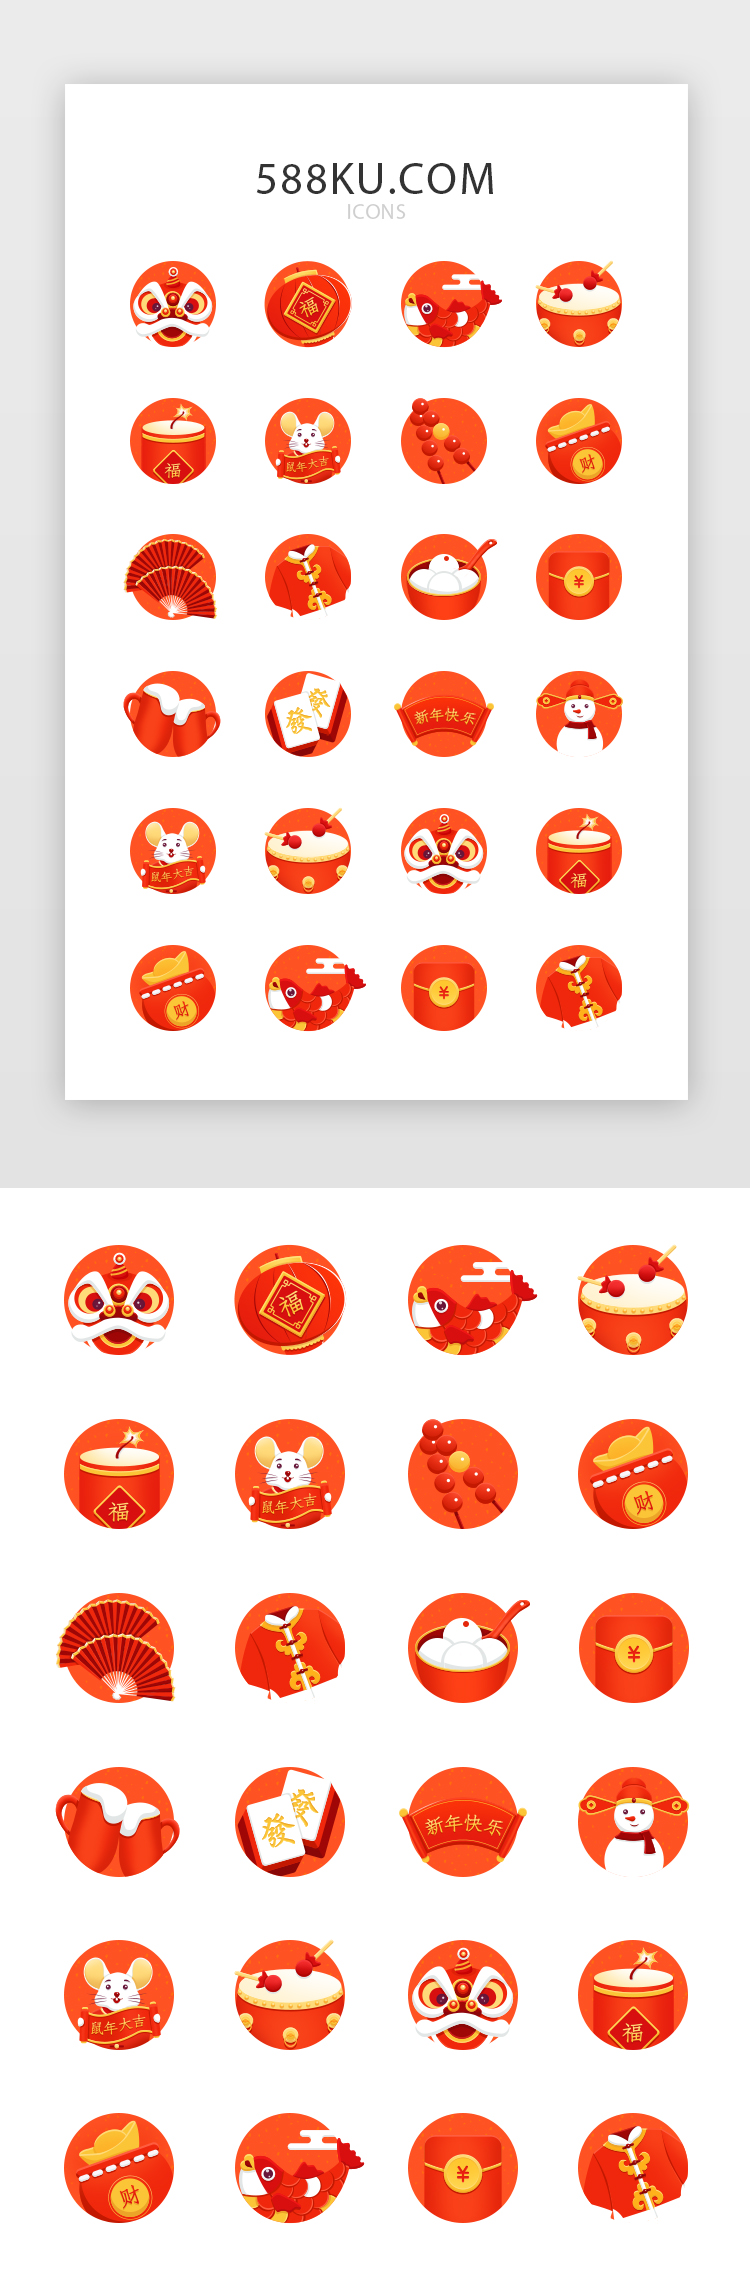 鼠年红黄色系新年图标icon图片